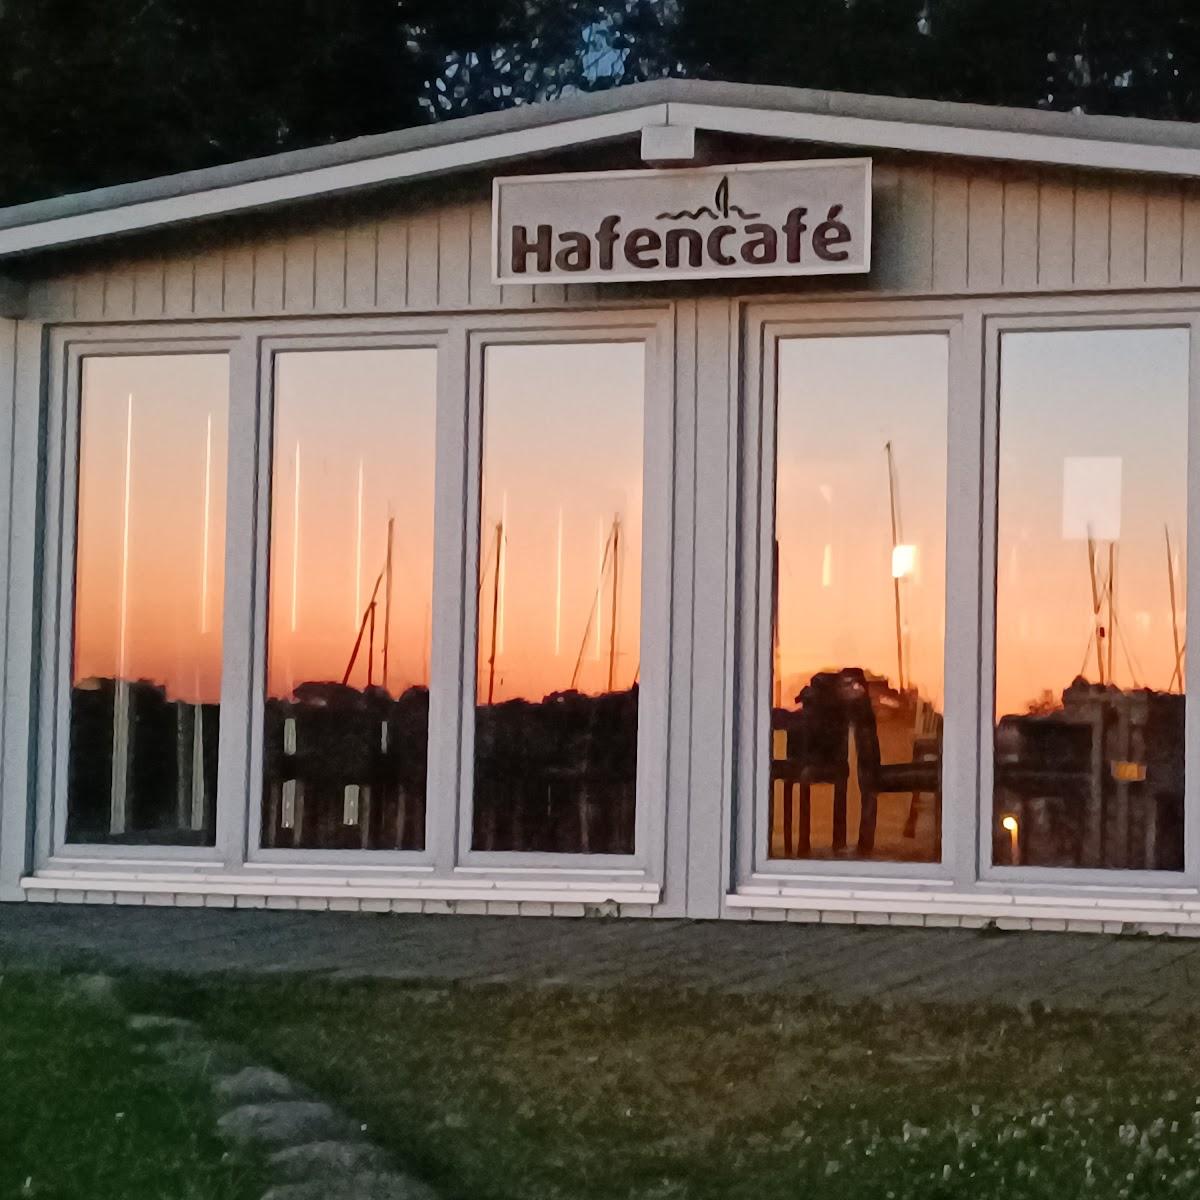 Restaurant "Hafencafé" in Kosel